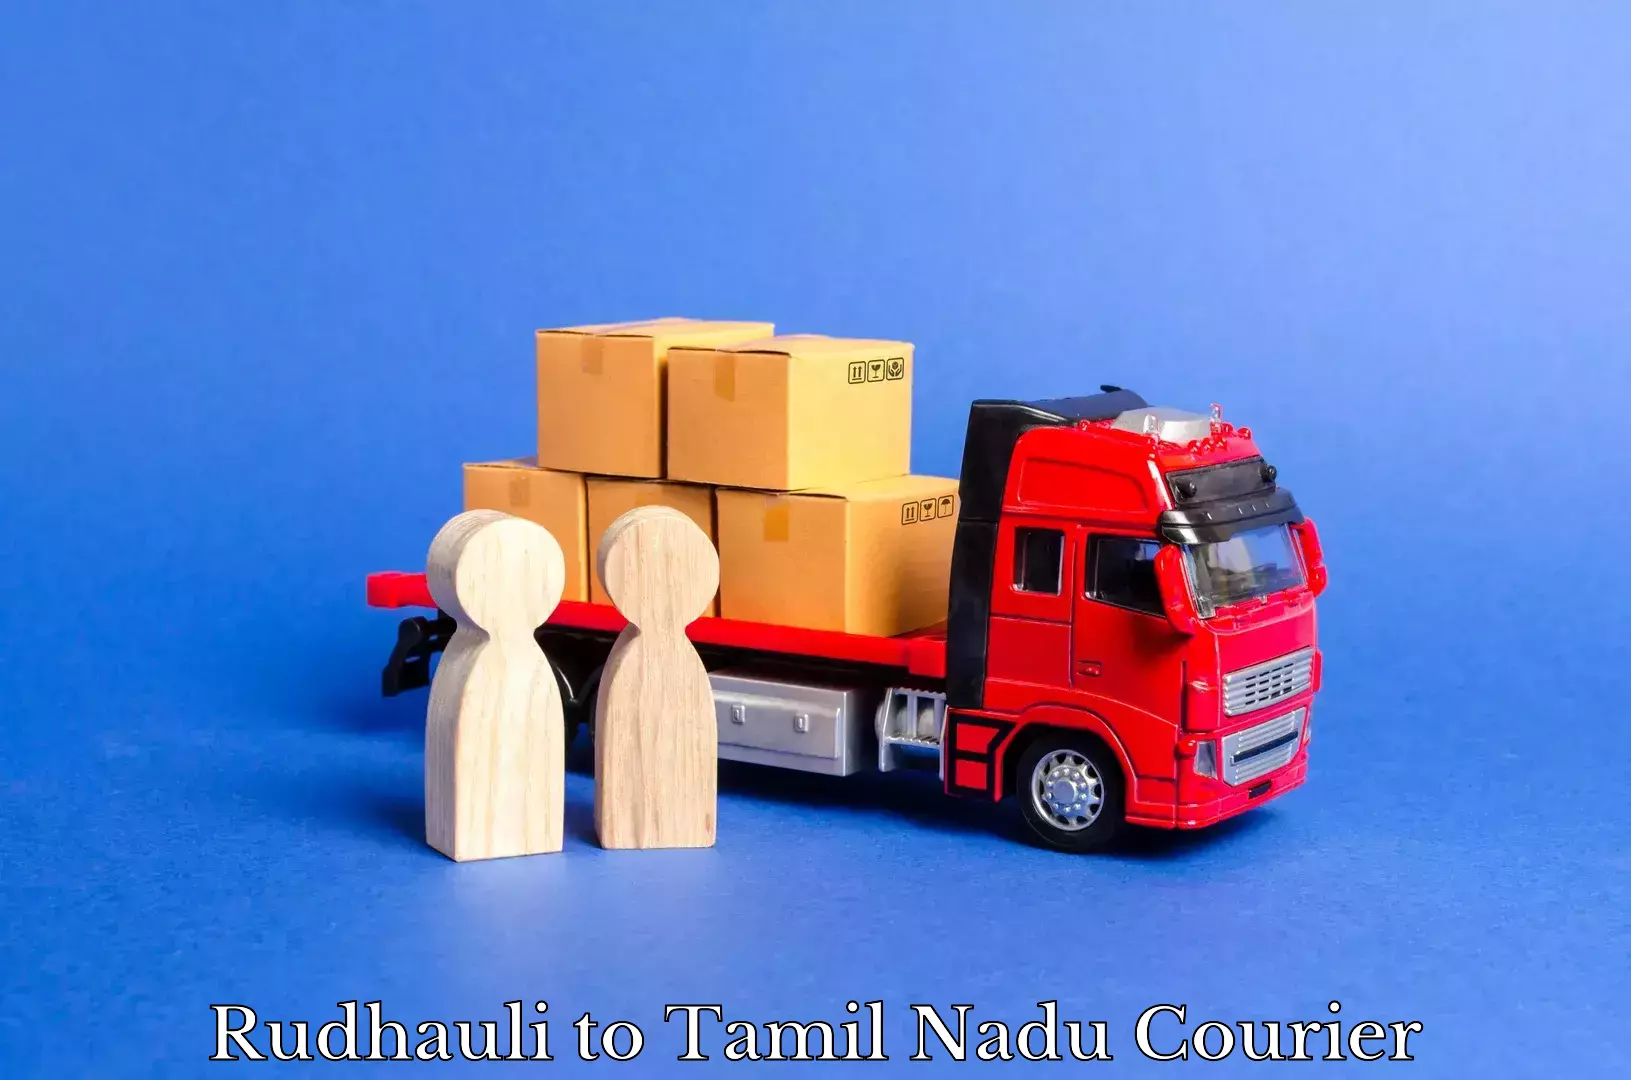 Custom courier packaging Rudhauli to Tamil Nadu